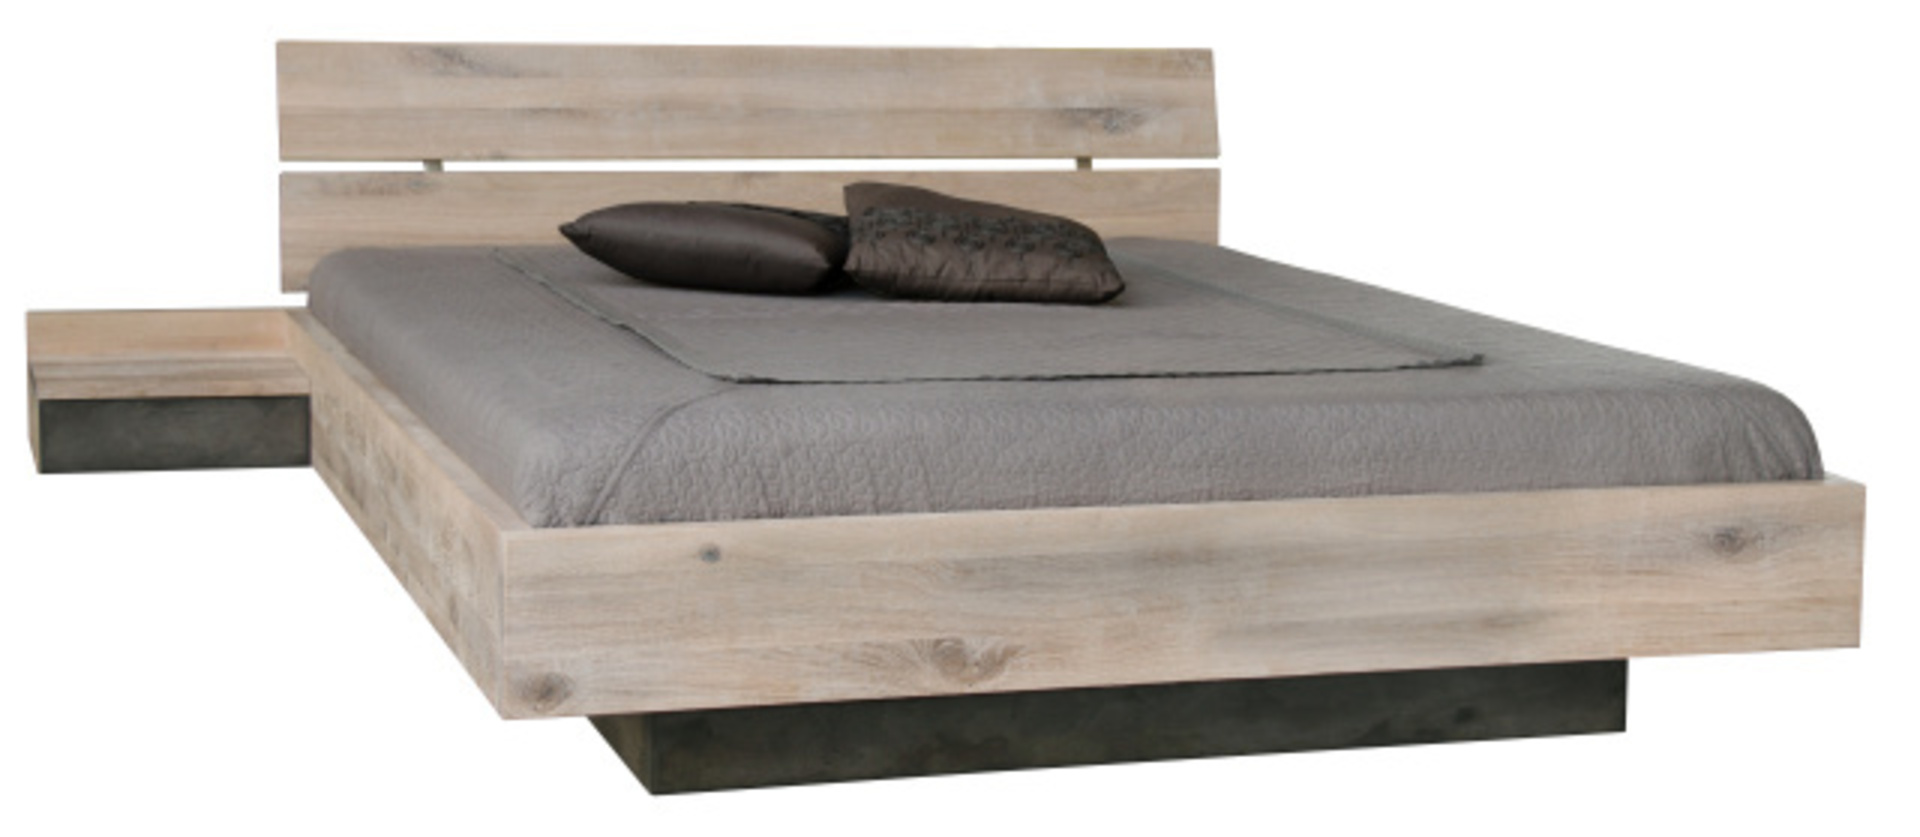 Manželská posteľ v minimalistickom duchu v škandinávskom štýle doplnená o nočný stolík s levytujúcim efektom, ktorý je jej súčasťou. Posteľ je z masívneho, svetlého dreva doplnená o sivú posteľnú bielizeň